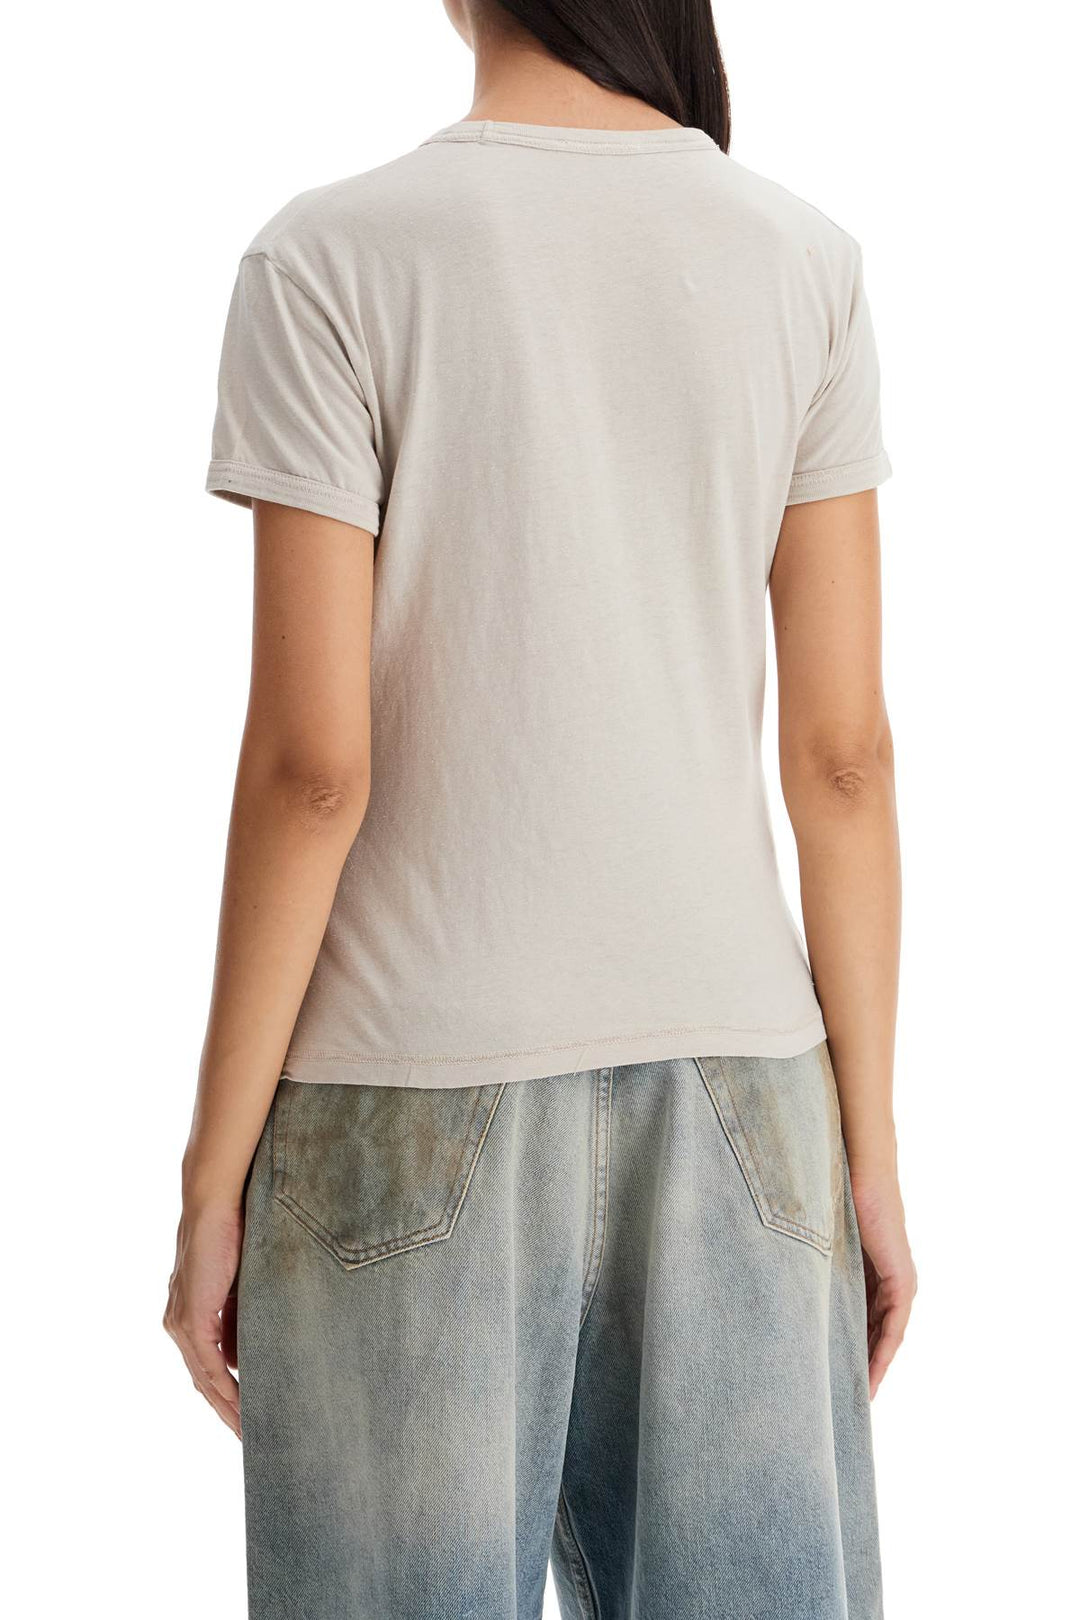 Acne Studios Printed Slim Fit T Shirt   Grey